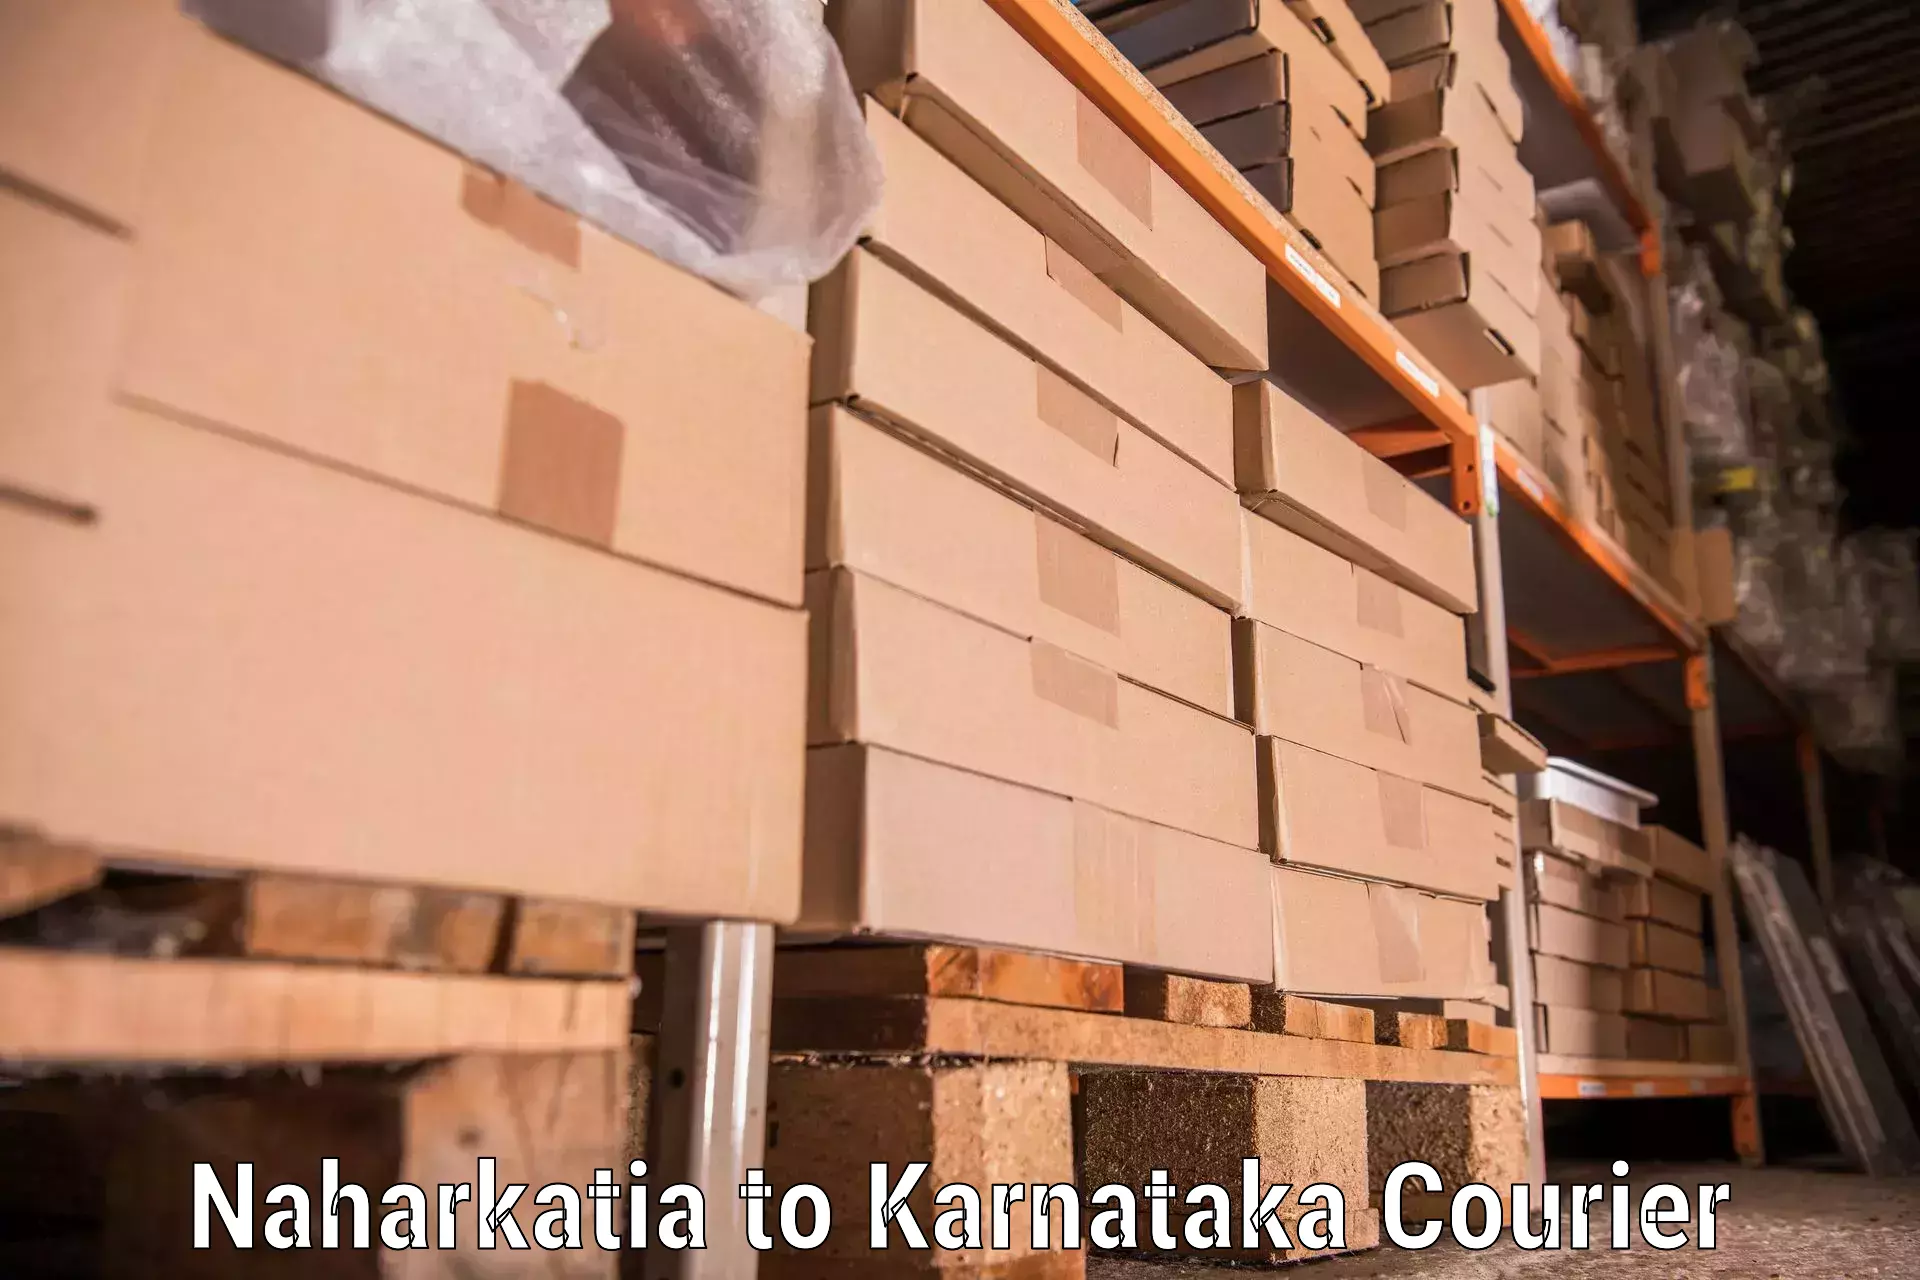 Efficient relocation services Naharkatia to Karnataka